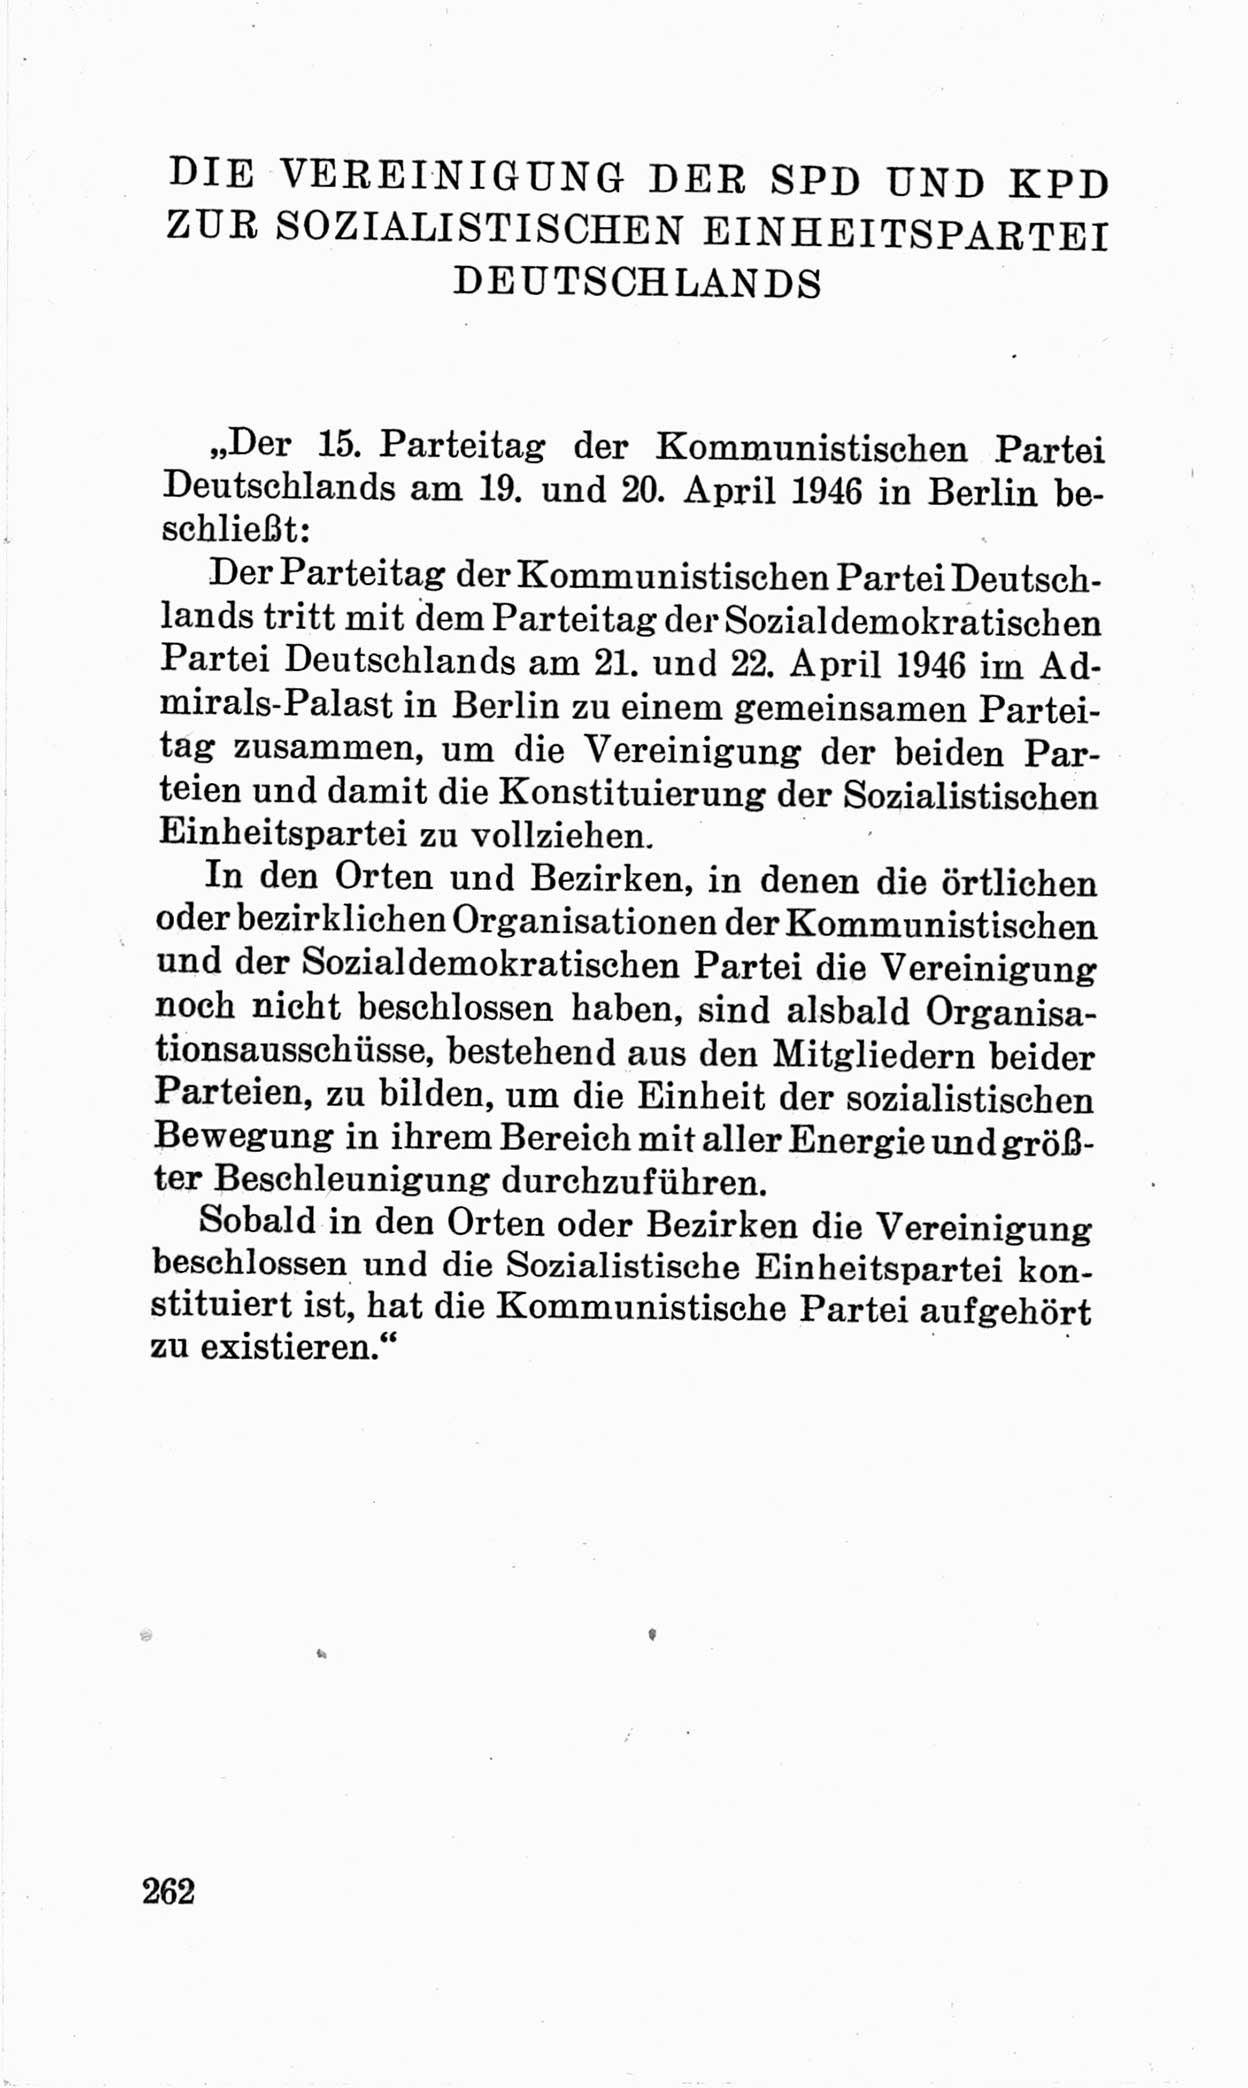 Bericht über die Verhandlungen des 15. Parteitages der Kommunistischen Partei Deutschlands (KPD) [Sowjetische Besatzungszone (SBZ) Deutschlands] am 19. und 20. April 1946 in Berlin, Seite 262 (Ber. Verh. 15. PT KPD SBZ Dtl. 1946, S. 262)